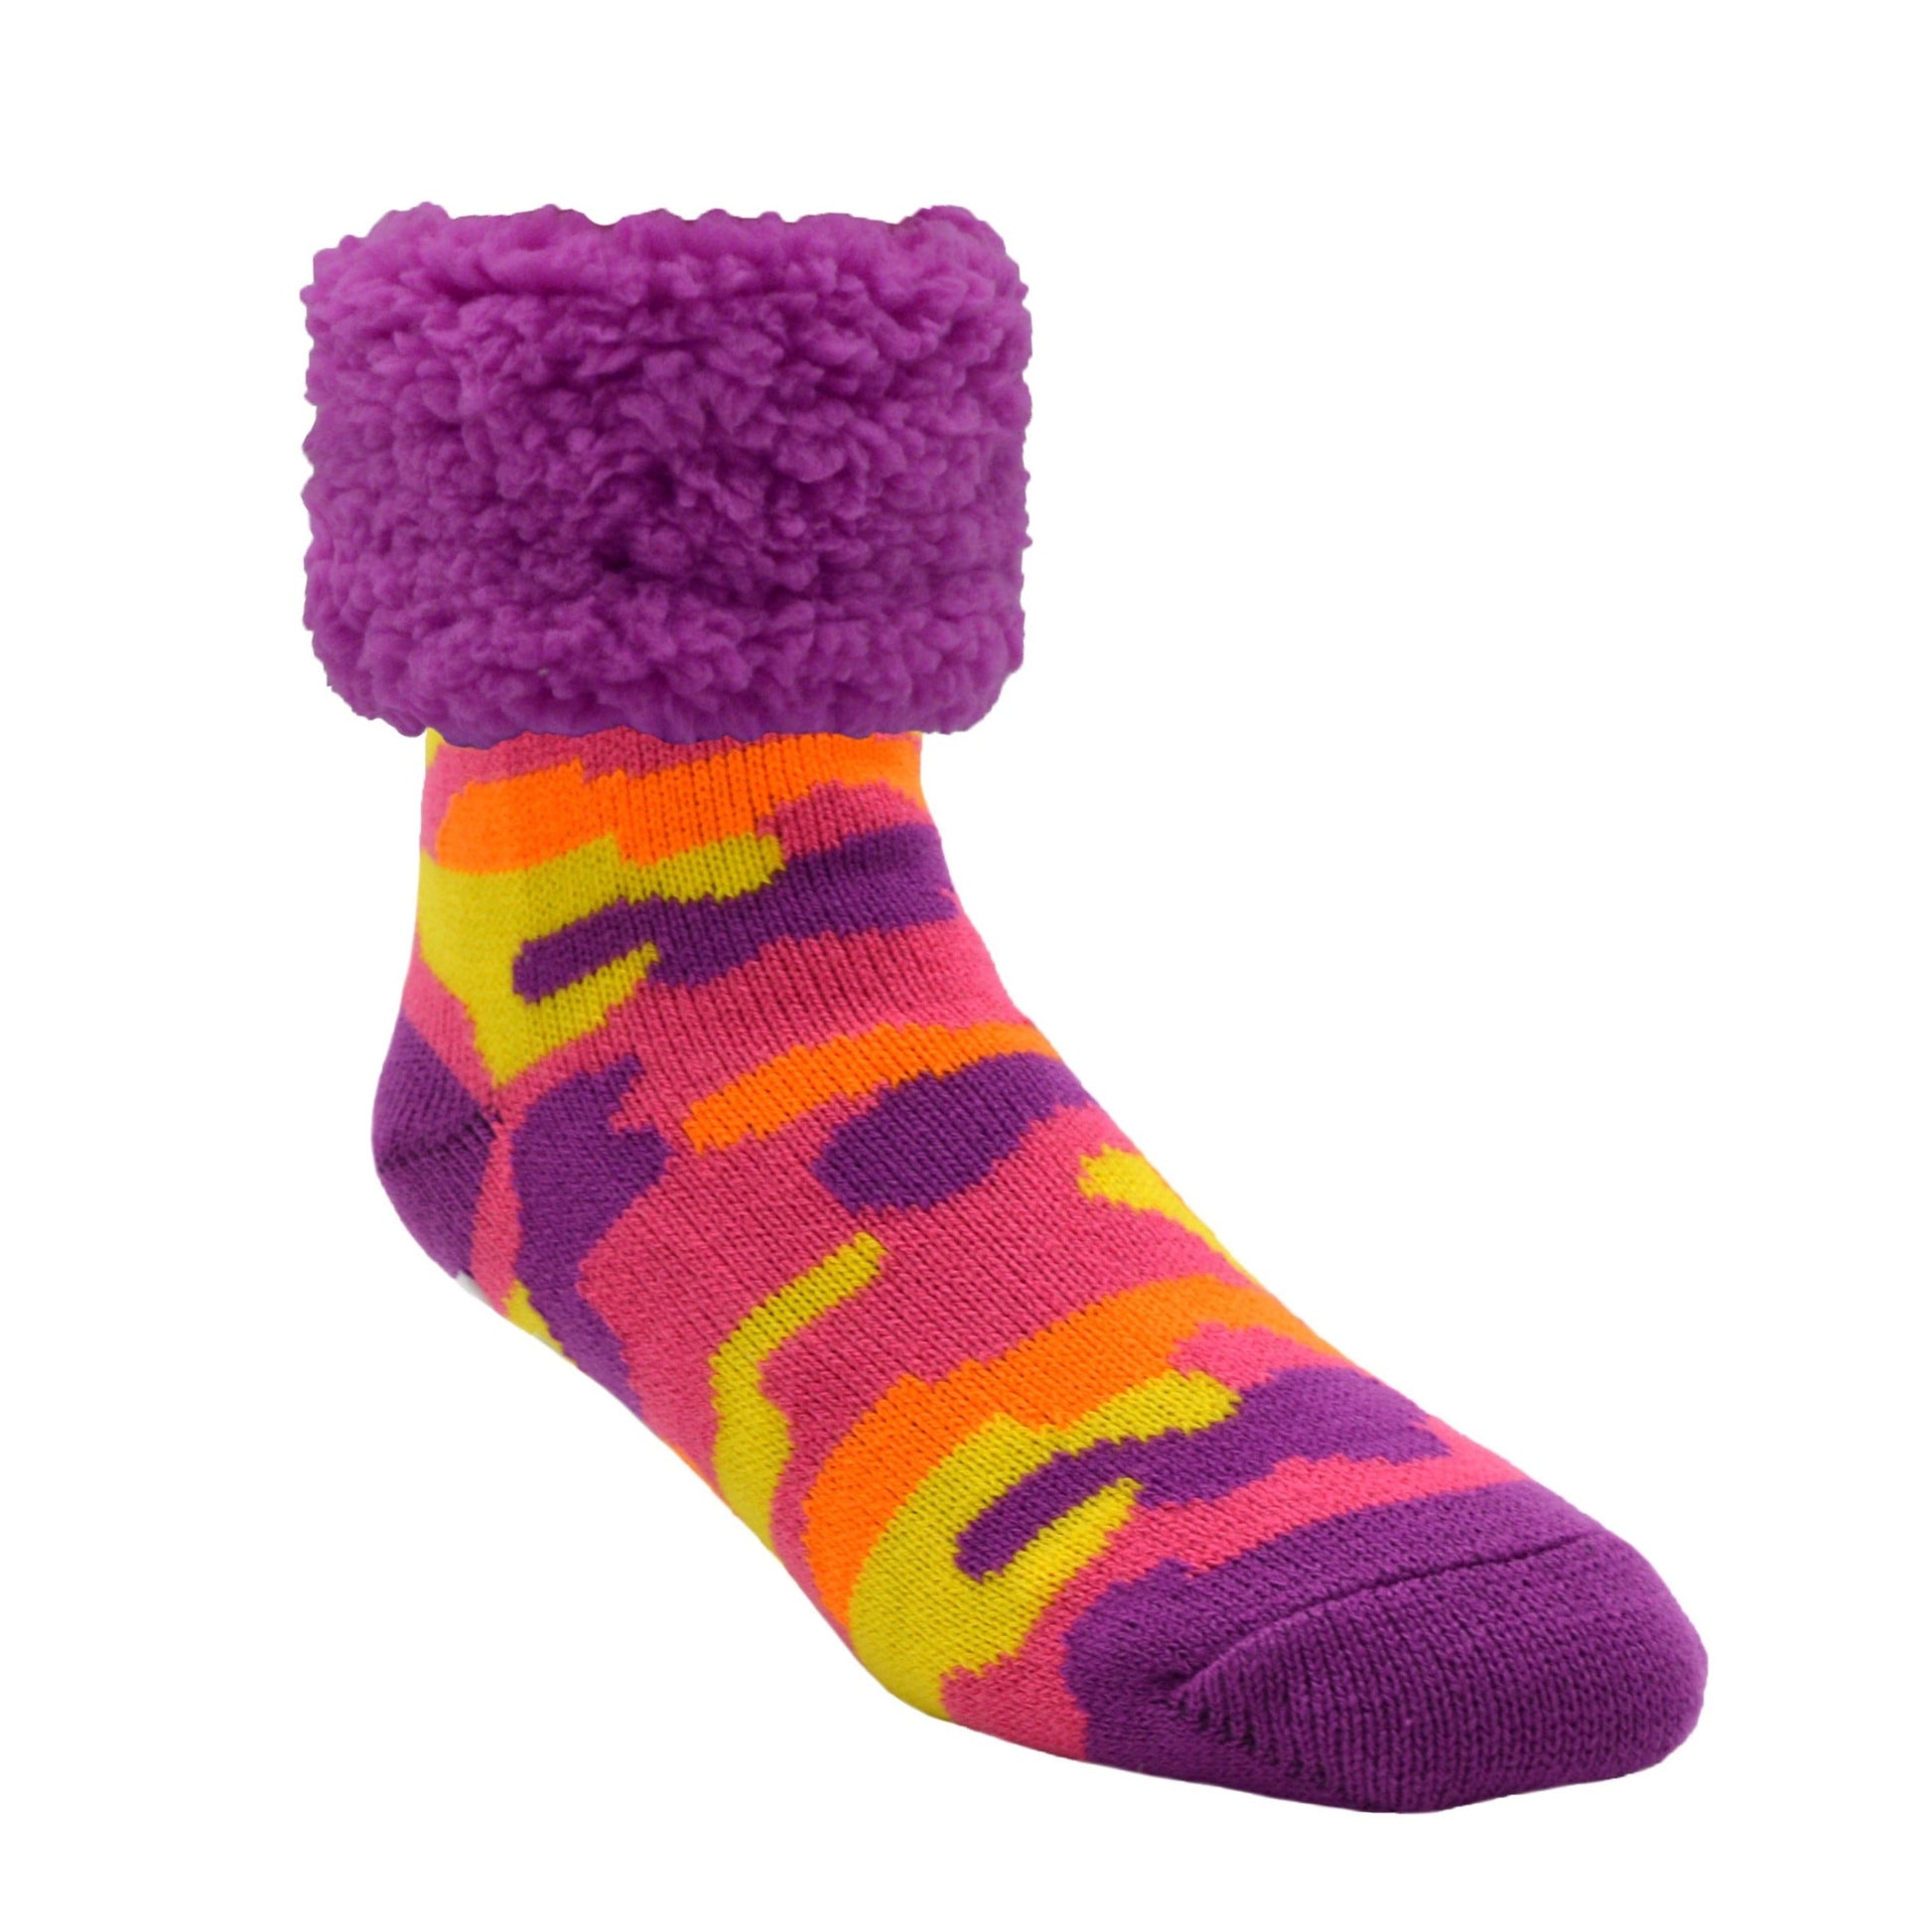 Classic Slipper Socks  Bright Camo Purple – Pudus Lifestyle Co